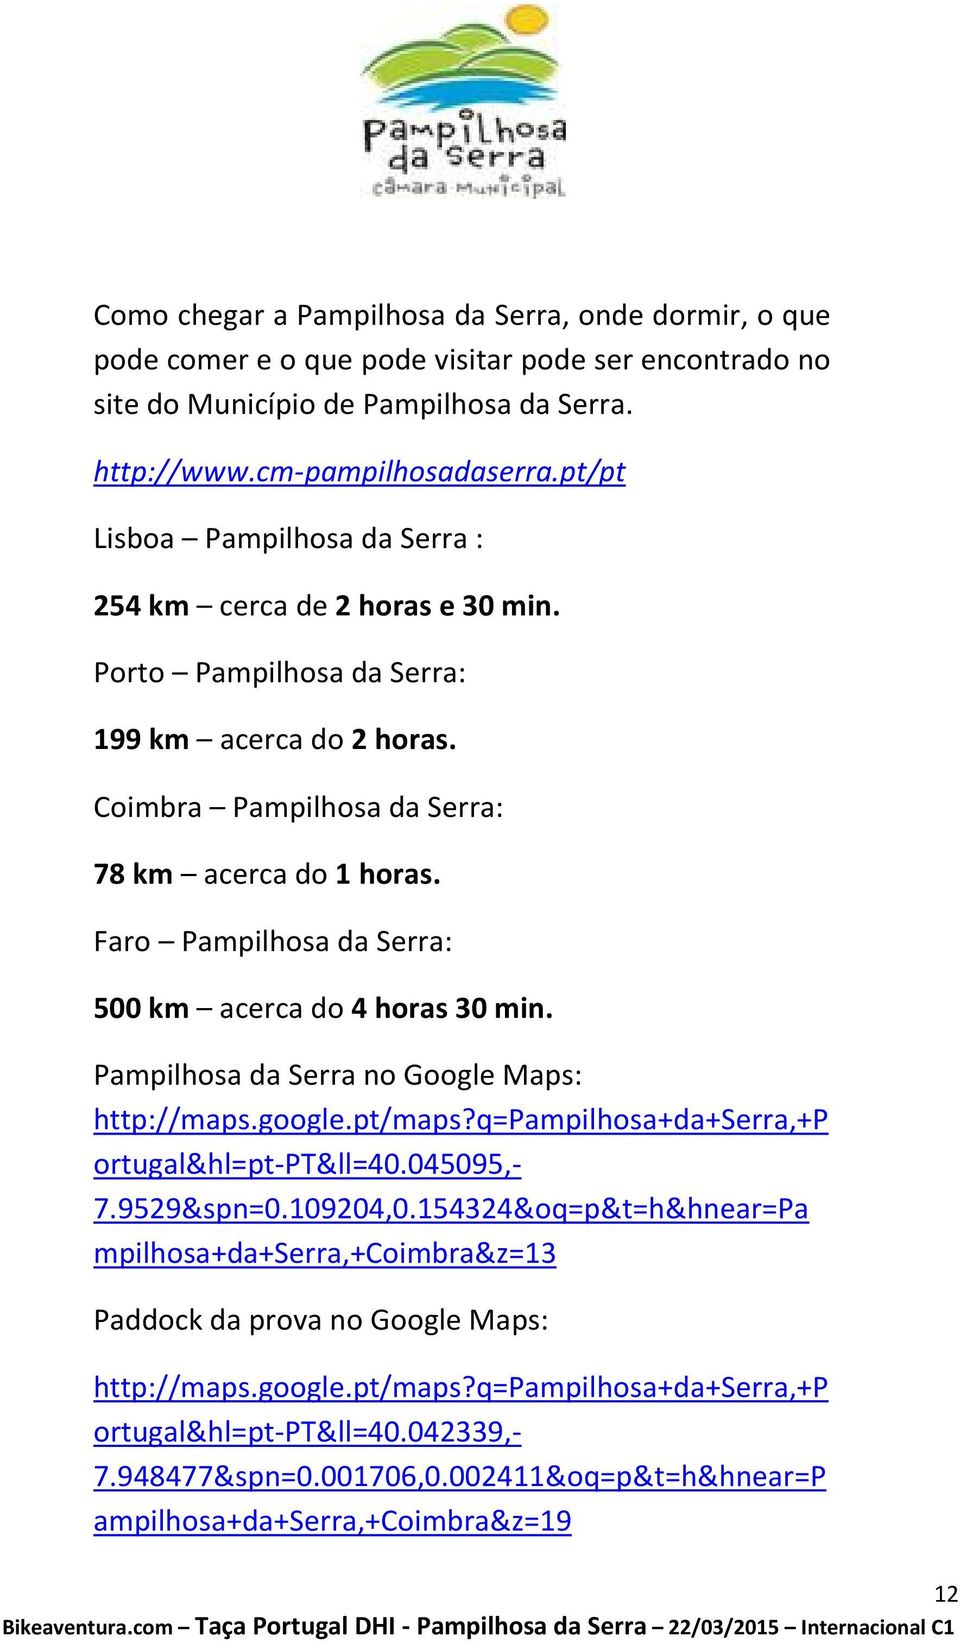 Faro Pampilhosa da Serra: 500 km acerca do 4 horas 30 min. Pampilhosa da Serra no Google Maps: http://maps.google.pt/maps?q=pampilhosa+da+serra,+p ortugal&hl=pt-pt&ll=40.045095,- 7.9529&spn=0.